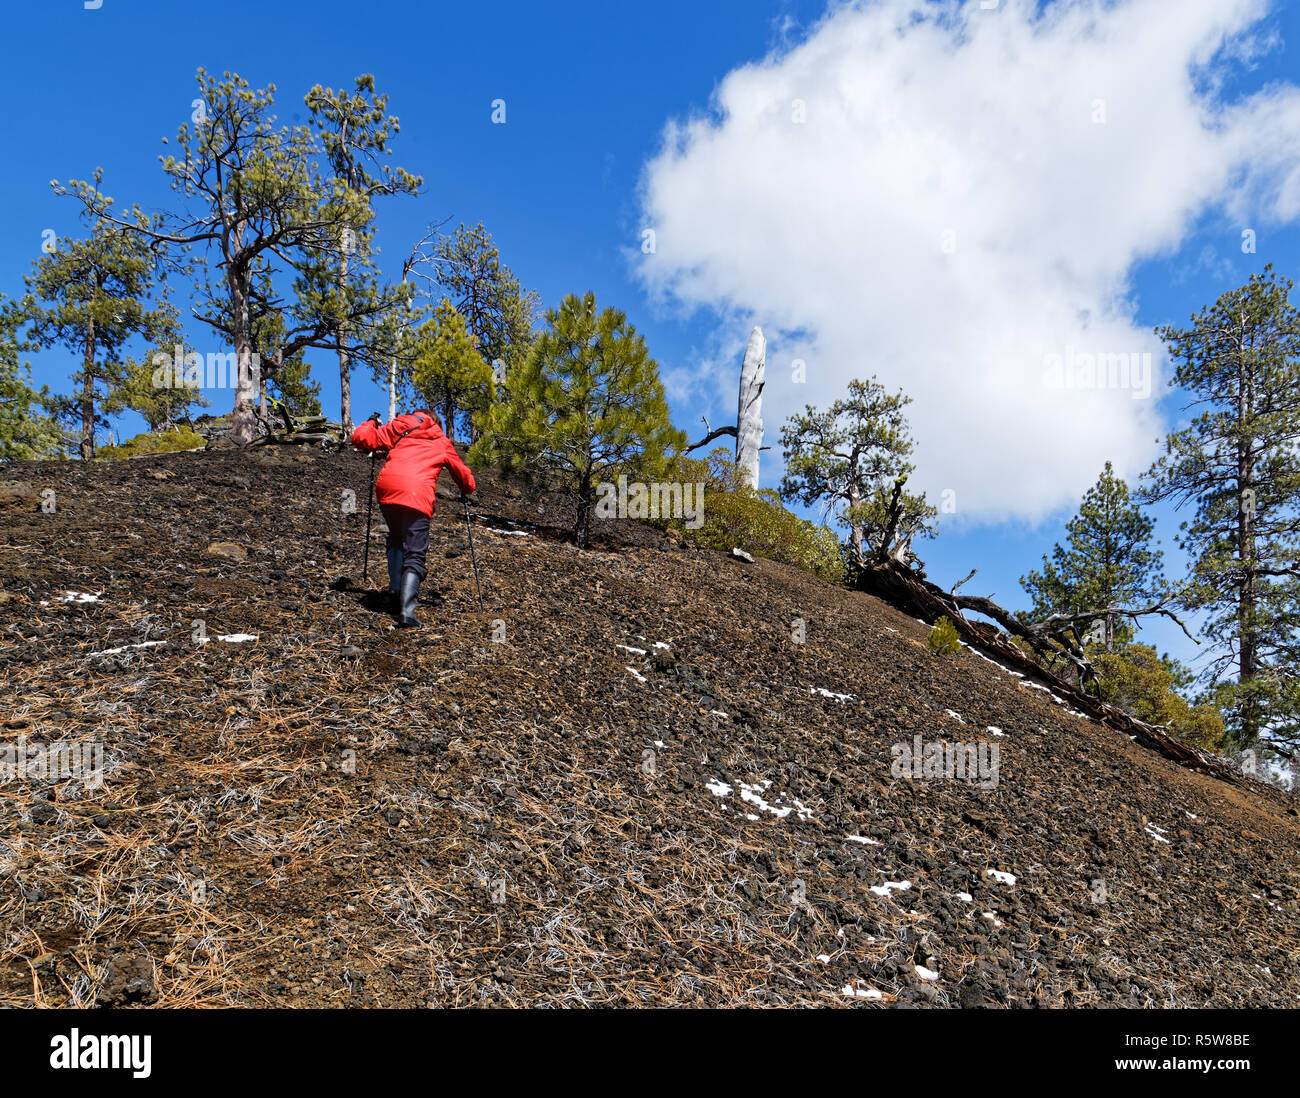 Mujer 42,835.02048 senderismo luchando para subir una empinada ladera de un cono de escoria negra con árboles de pino Ponderosa (Pinus ponderosa), blue sky blancas nubes. Foto de stock